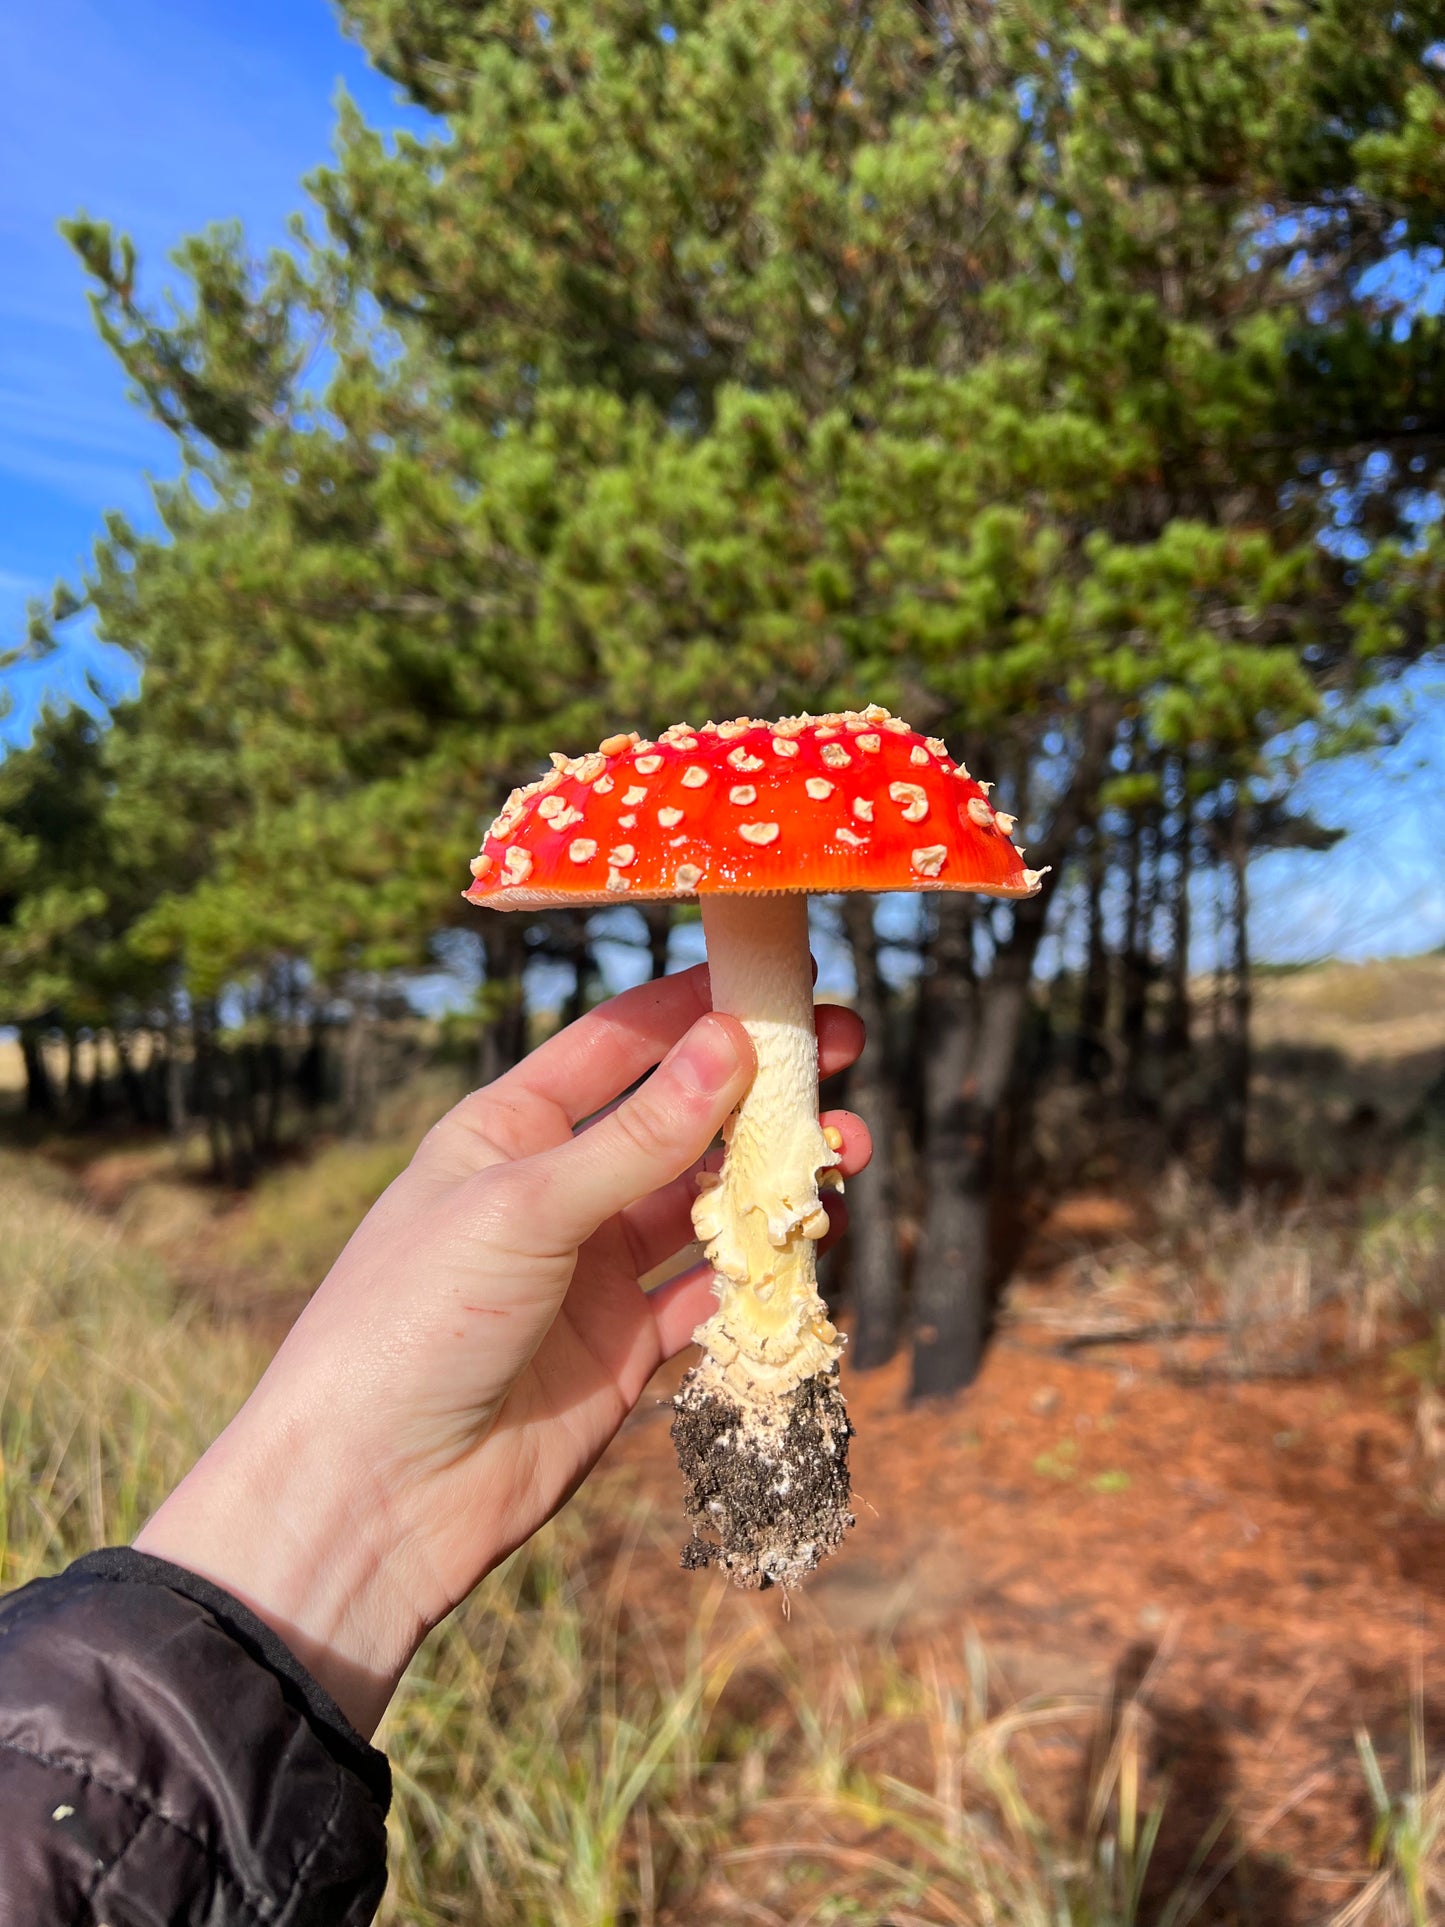 beautiful Amanita muscaria mushroom